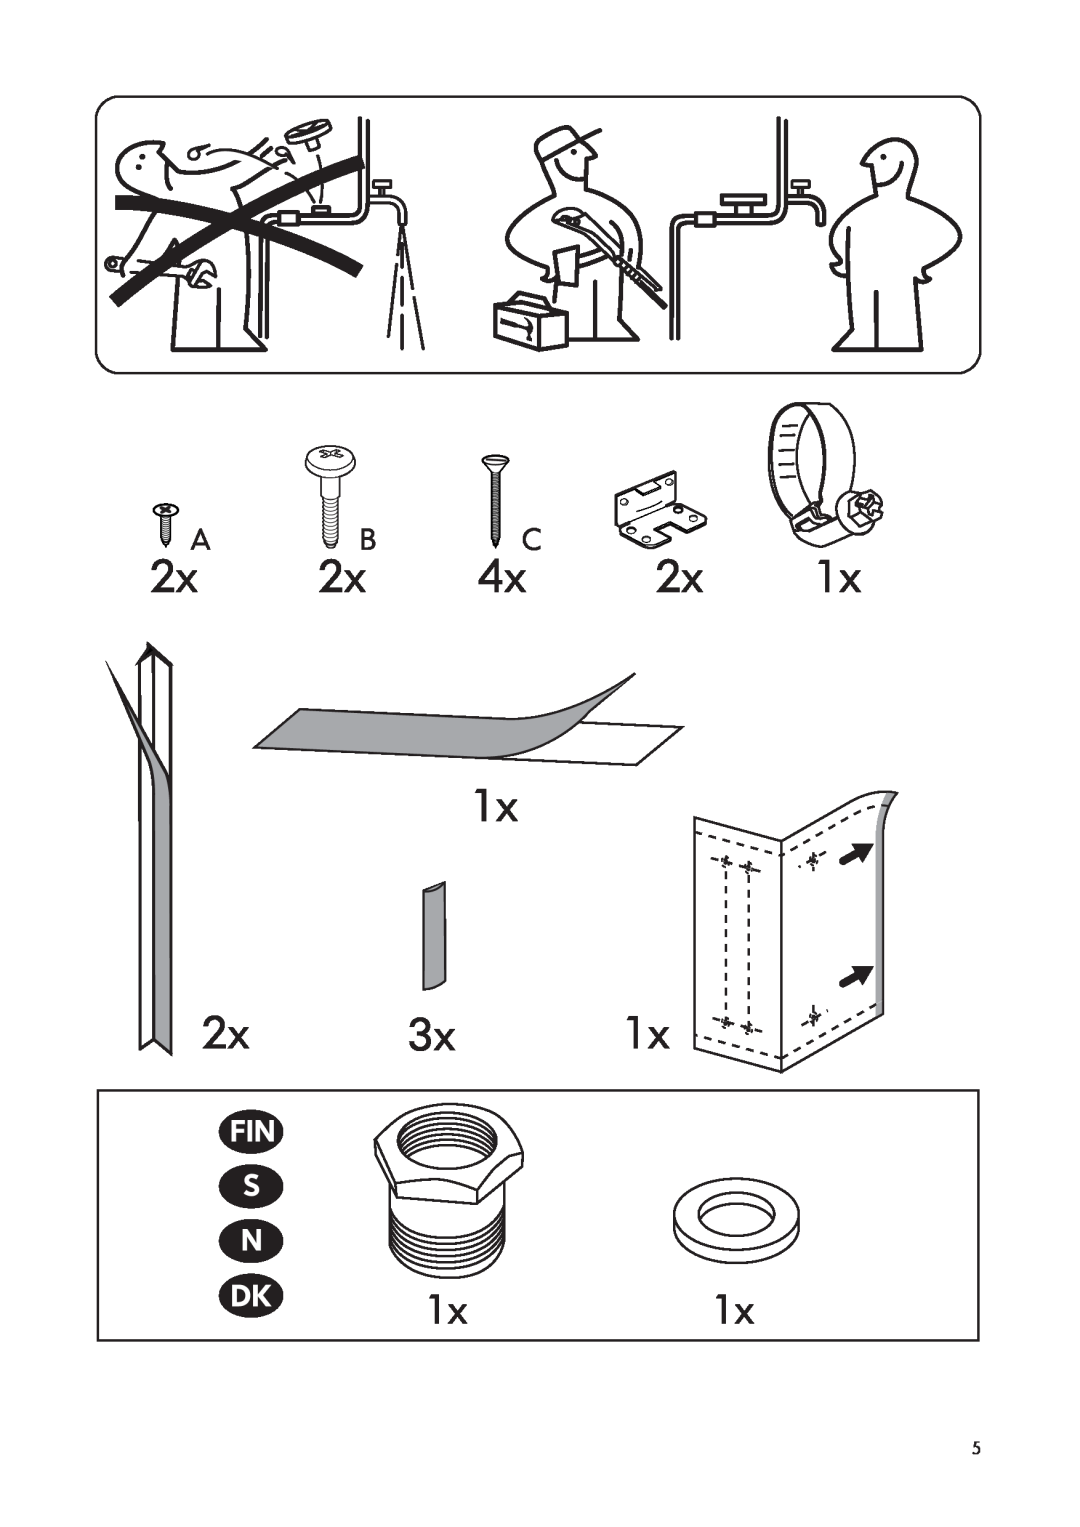 IKEA DWT160 manual A B C, Fin S N 